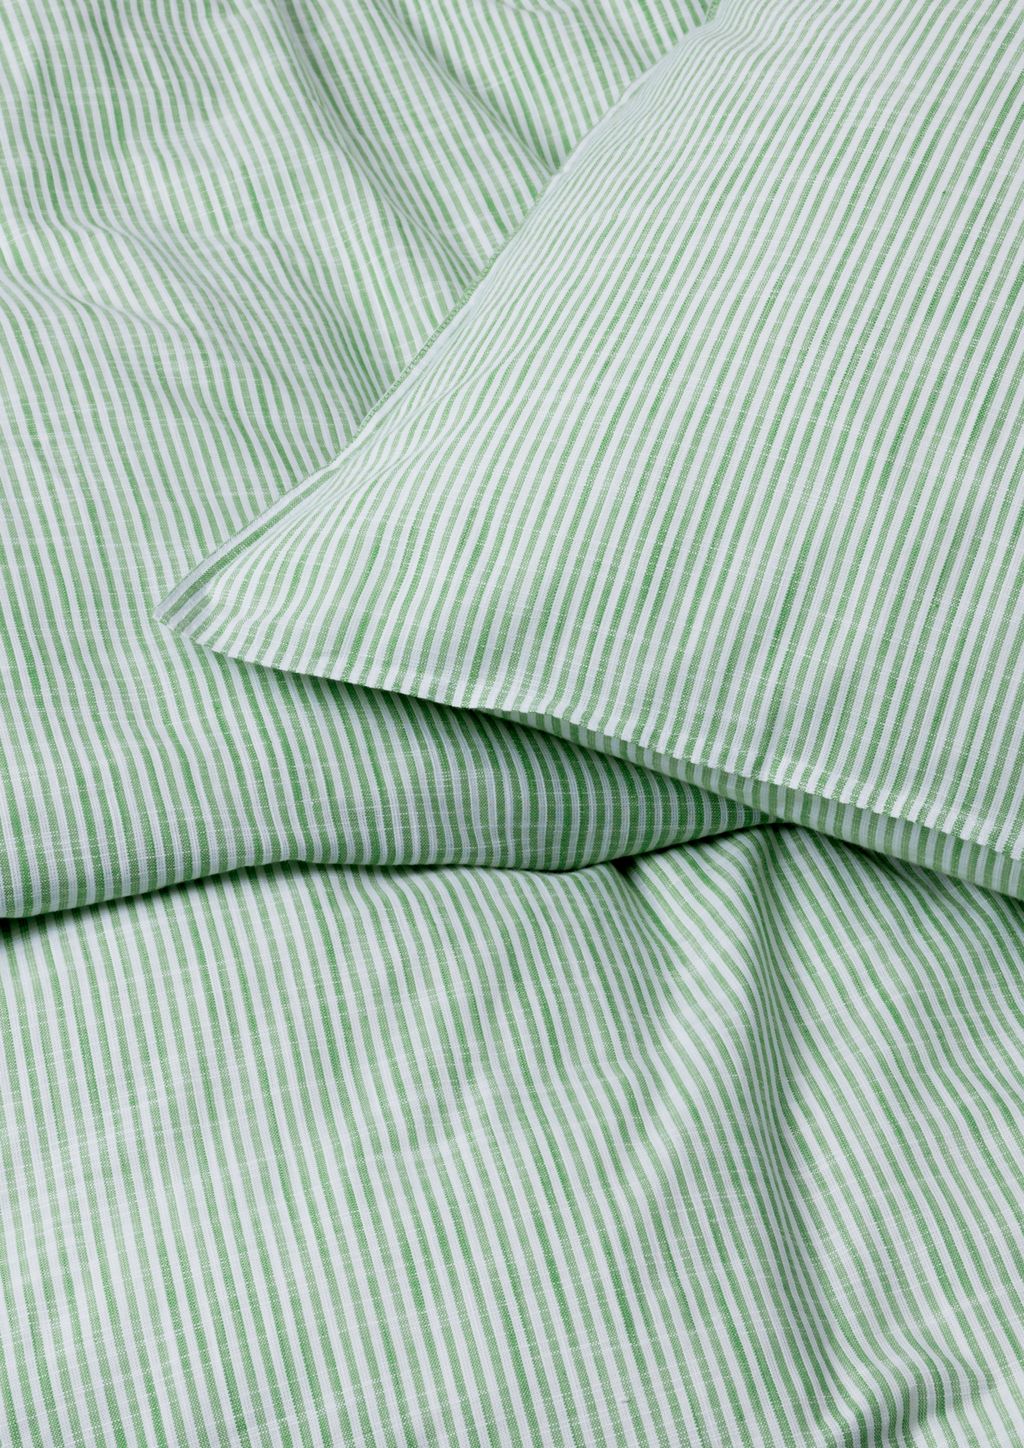 Juna Monochrome Lines Bettwäsche 200 x220 cm, grün/weiß